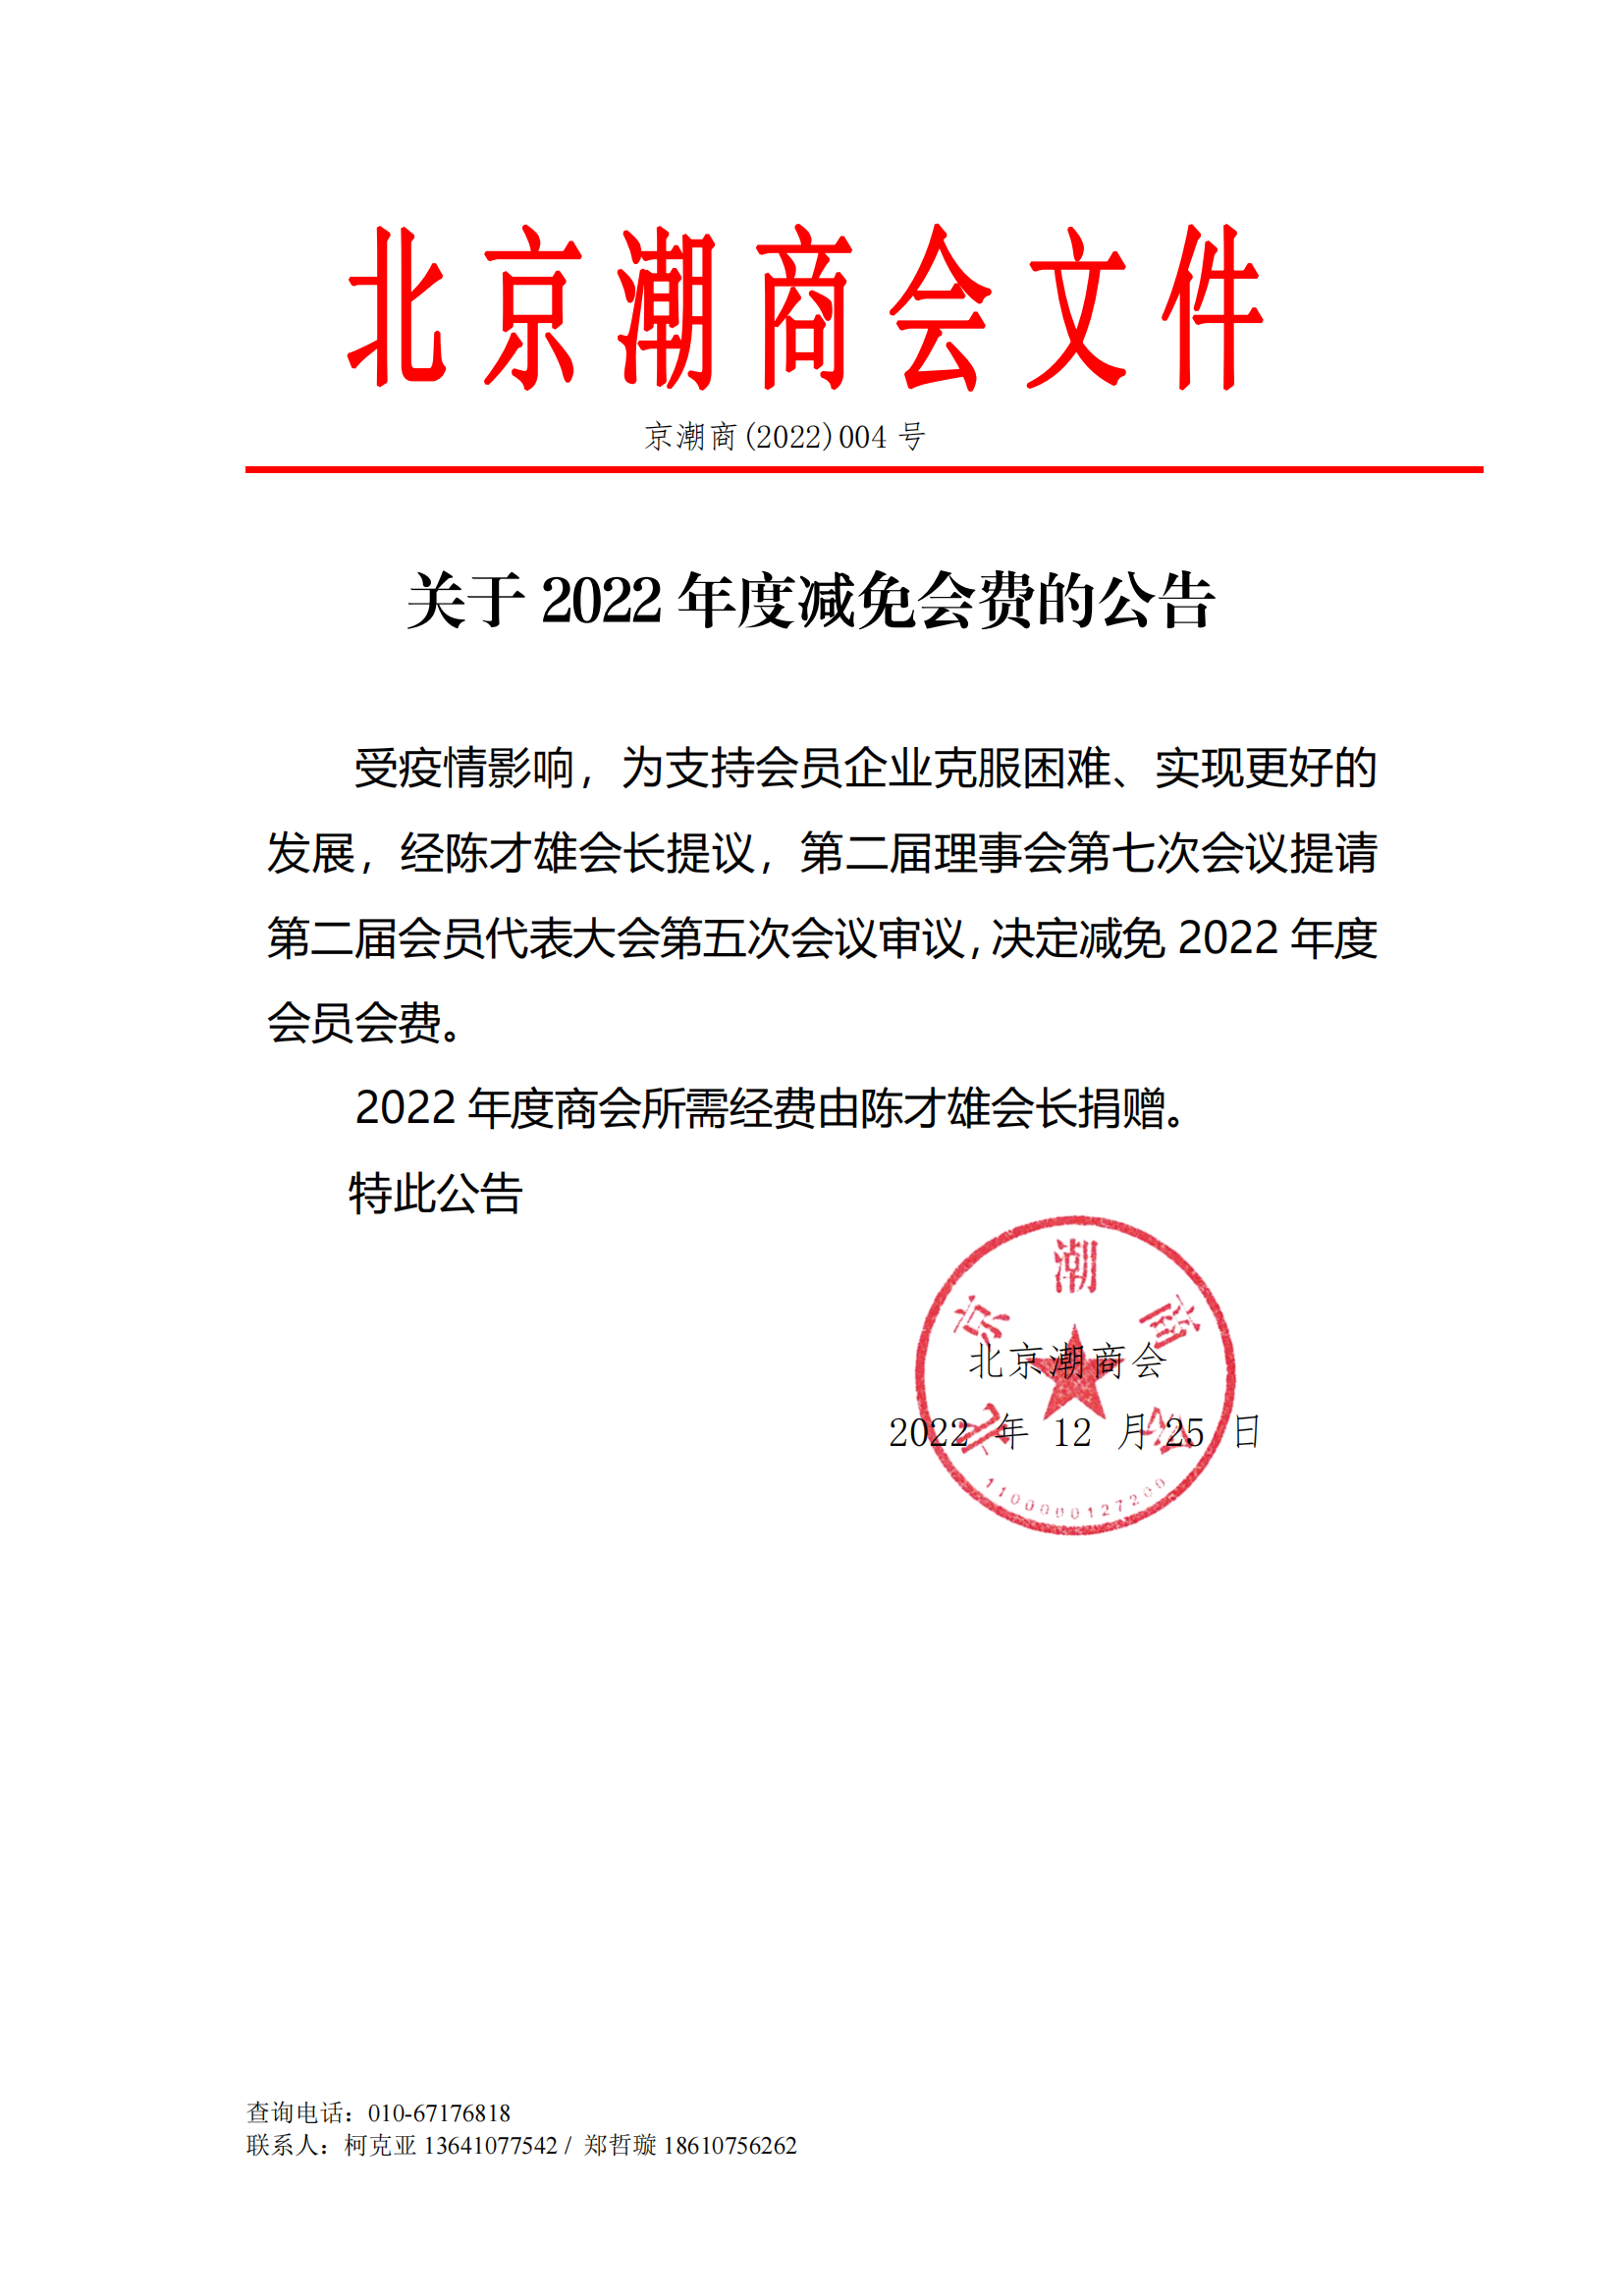 关于北京潮商会2022年度免收会费的公告